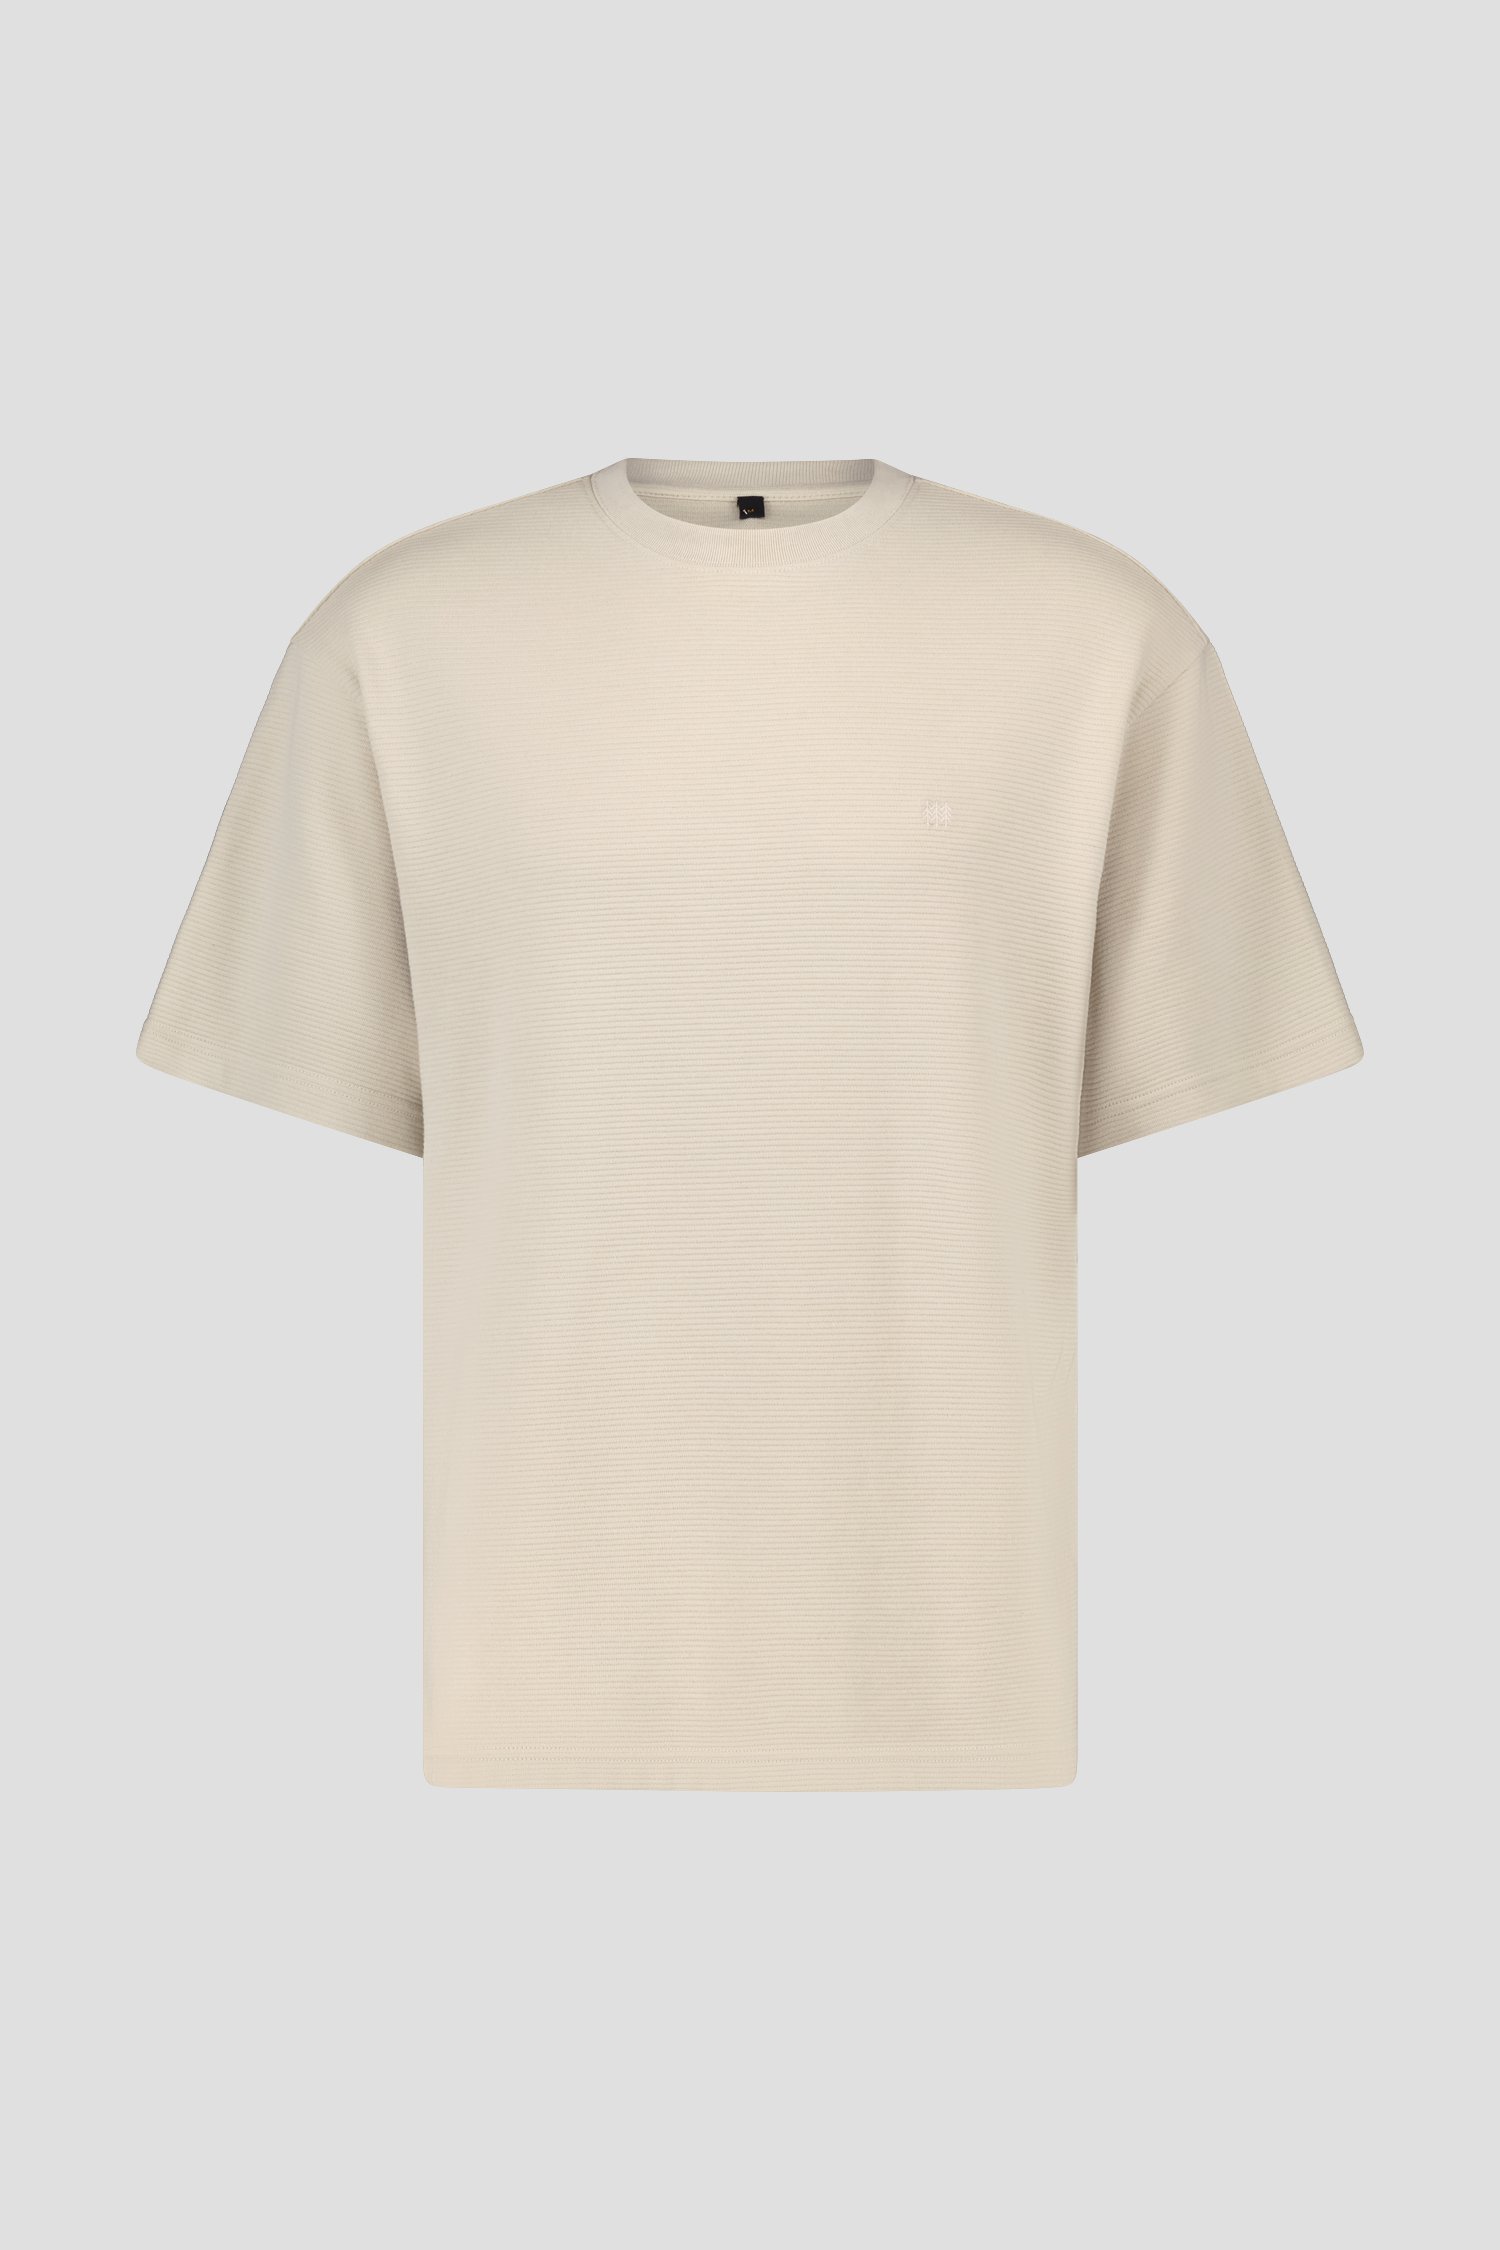 T-shirt beige côtelé - Collection Metejoor de Ravøtt pour Hommes